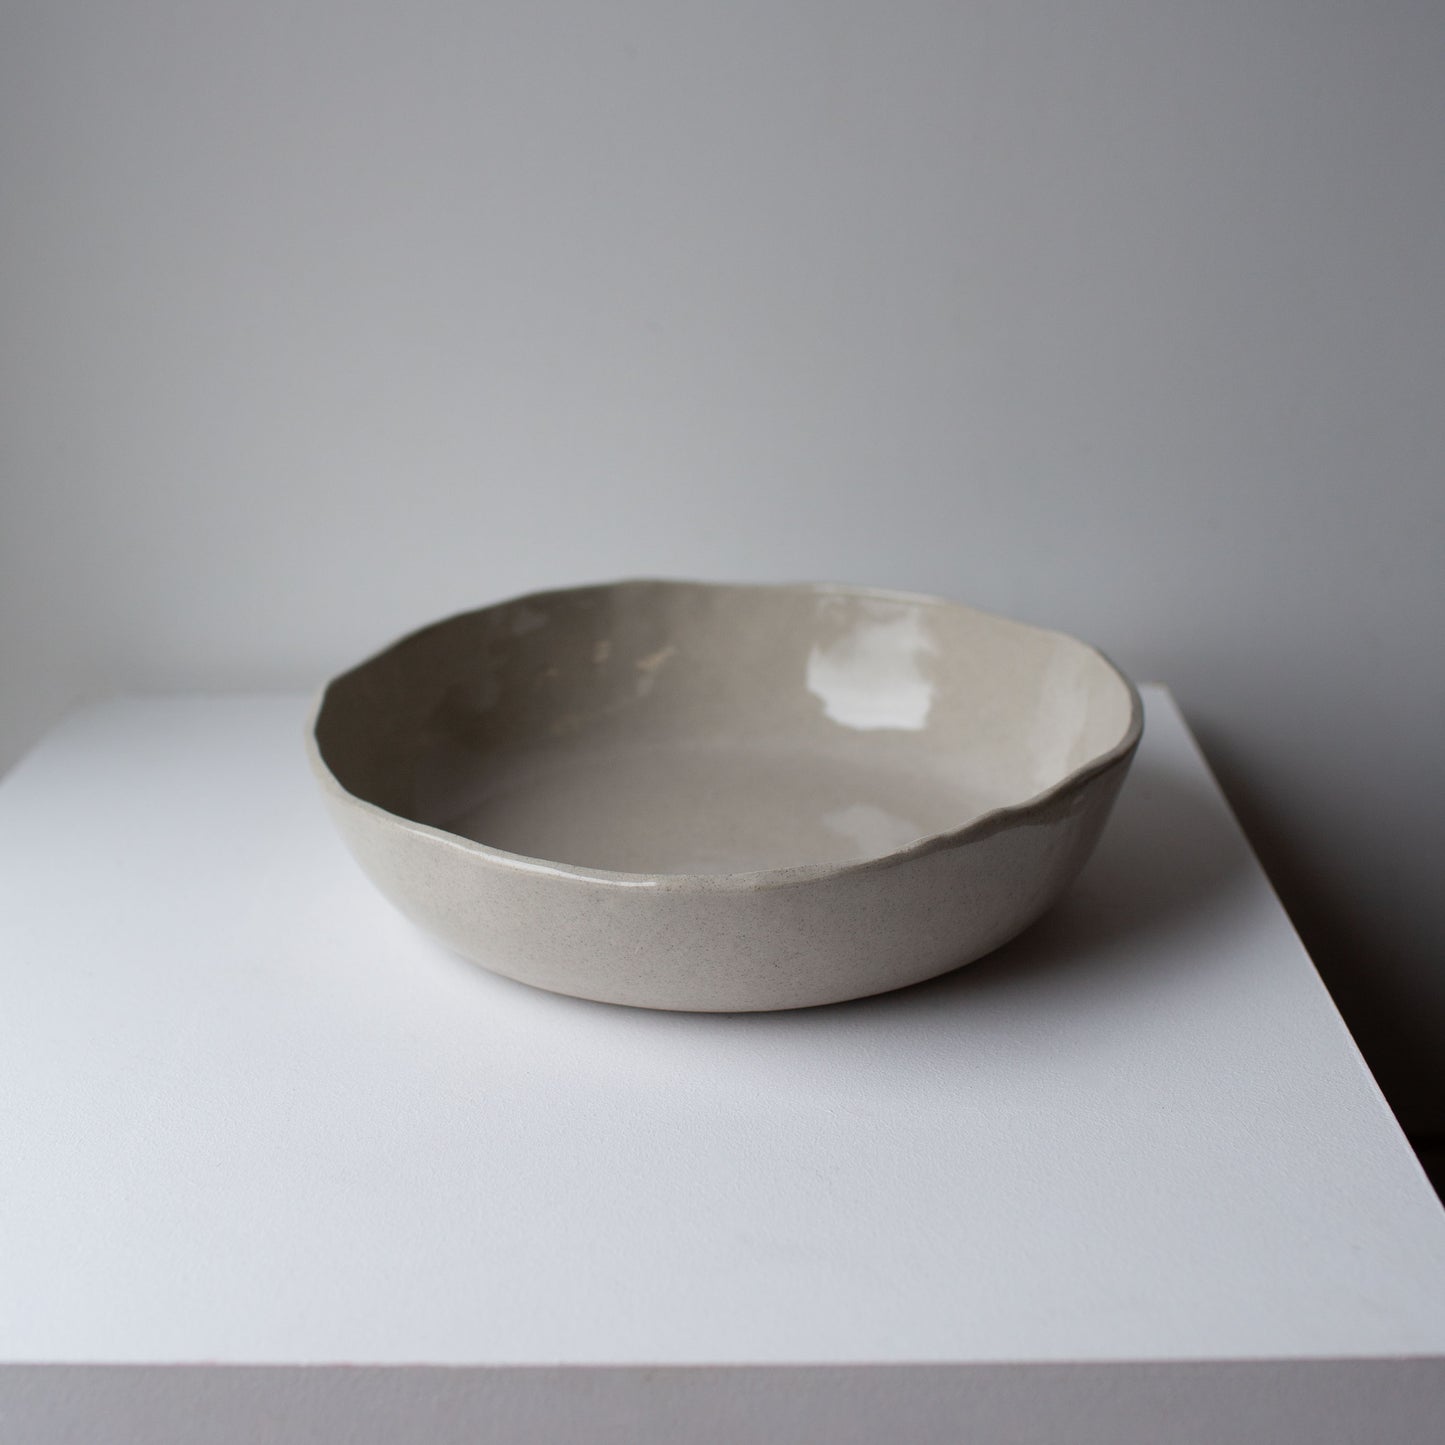 Large serving bowl - Sandstone